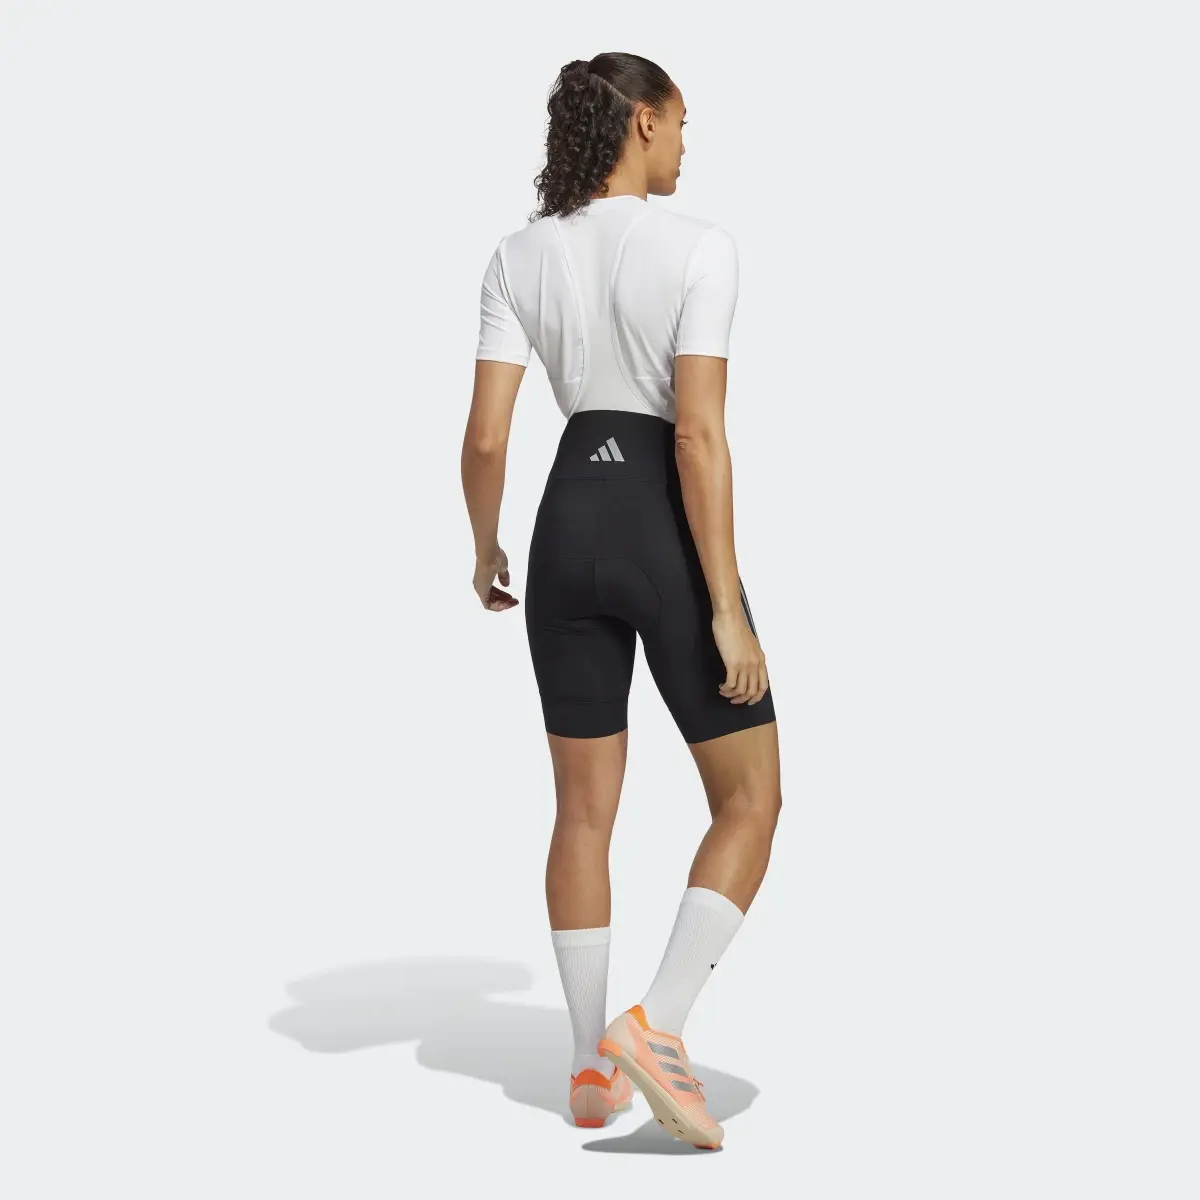 Adidas The Padded Cycling Bib Shorts. 2